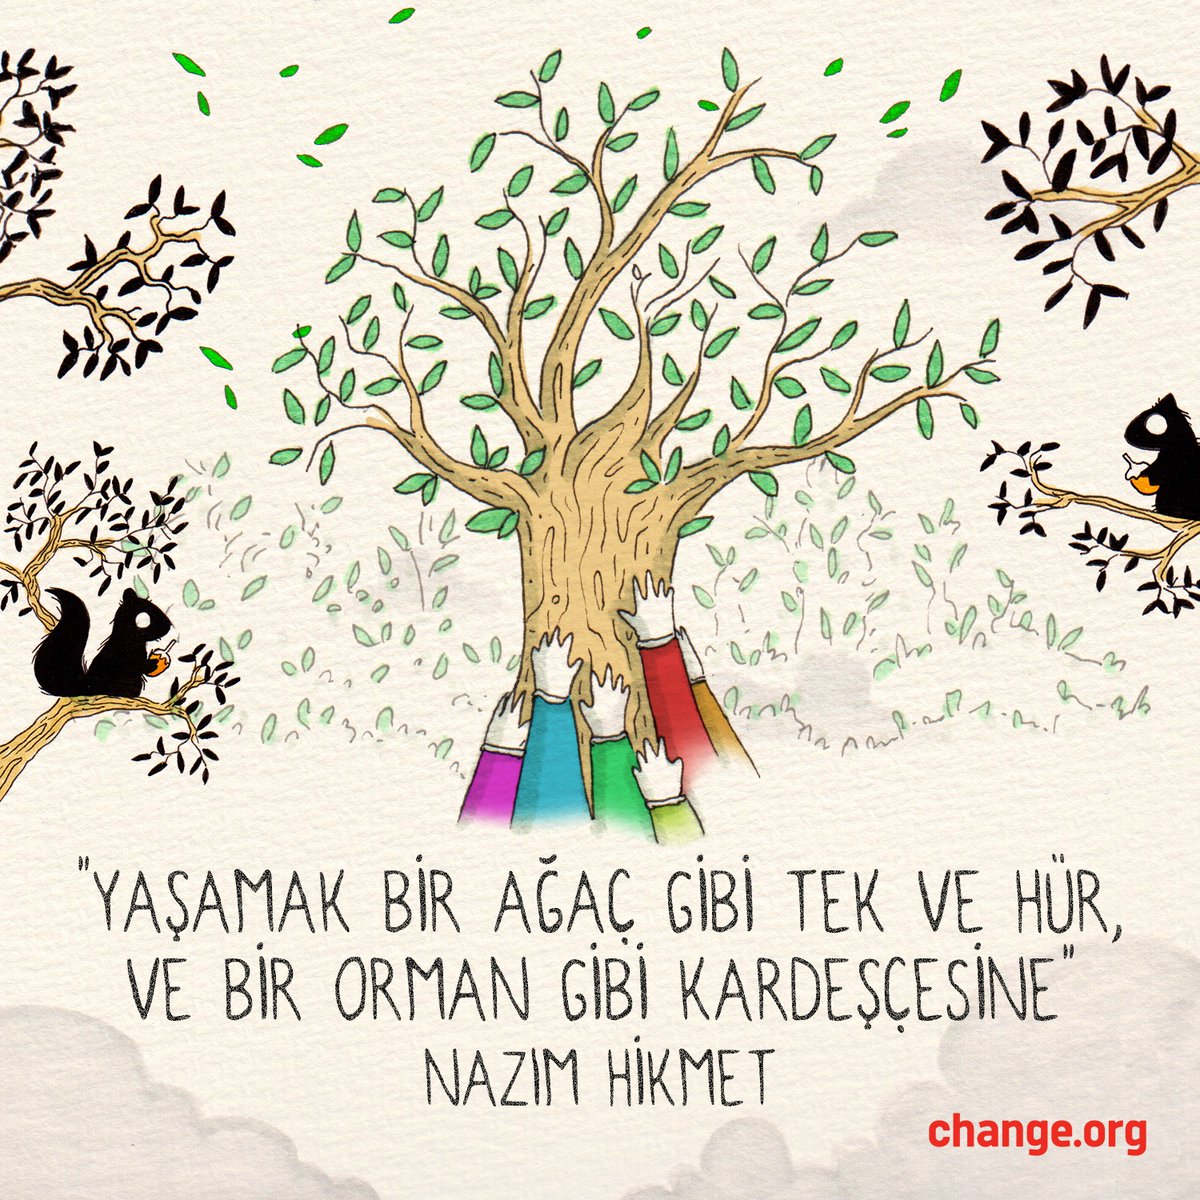 'Yaşamak bir ağaç gibi tek ve hür, ve bir orman gibi kardeşçesine' -Nazım Hikmet
#DeğişimMümkün